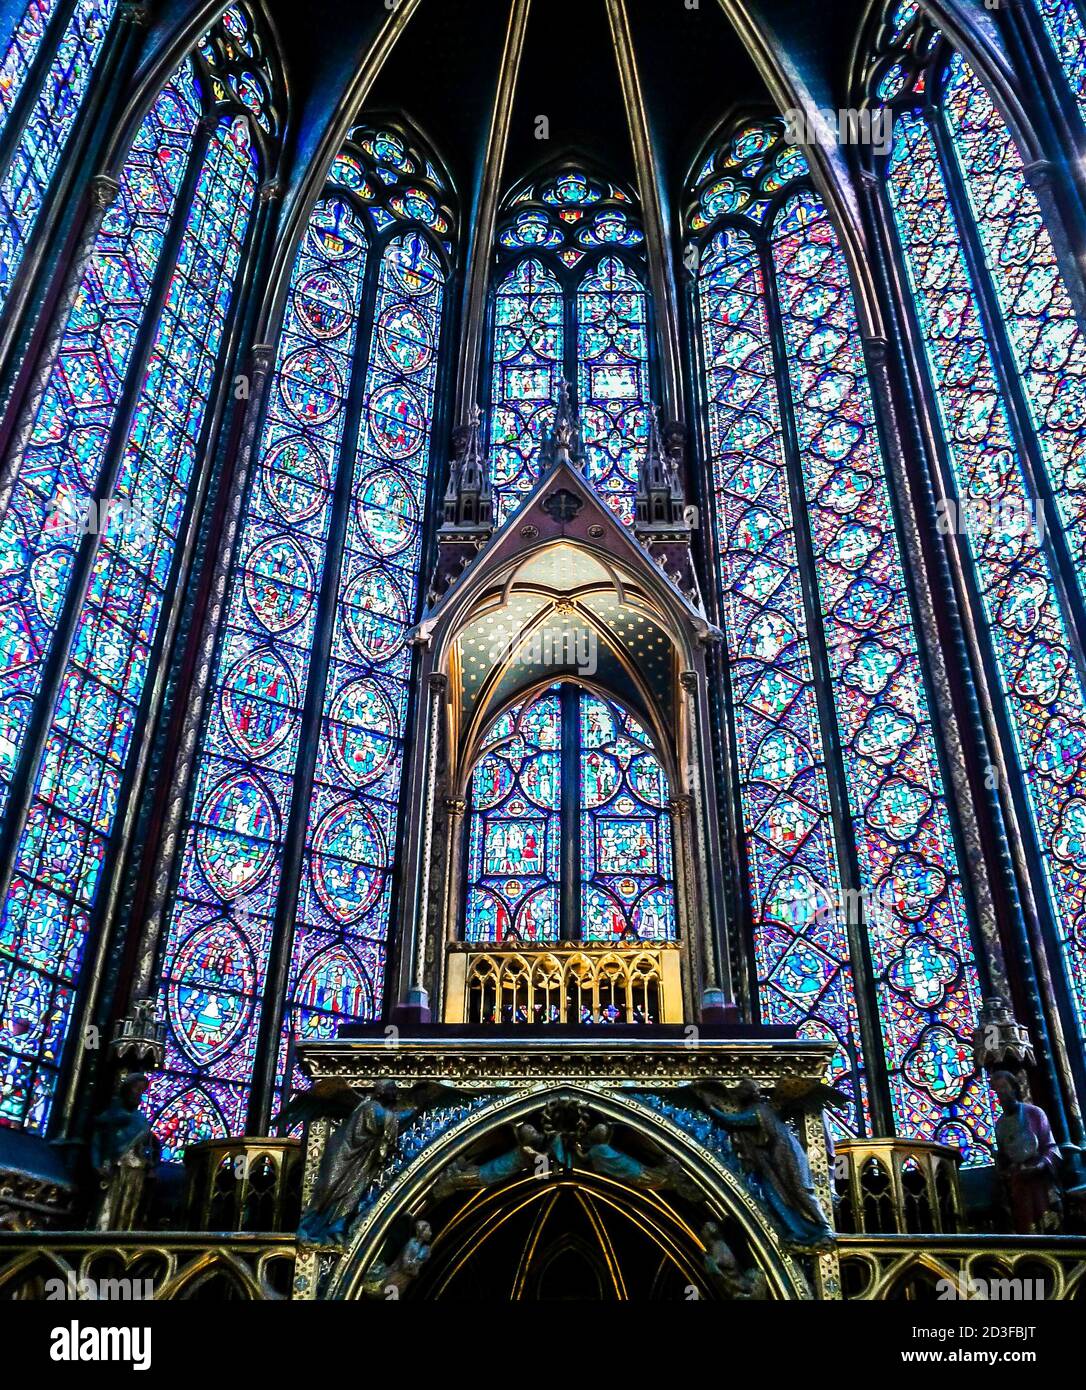 Die Sainte Chapelle (Heilige Kapelle) in Paris, Frankreich. Die Sainte Chapelle ist eine königliche mittelalterliche gotische Kapelle. Stockfoto